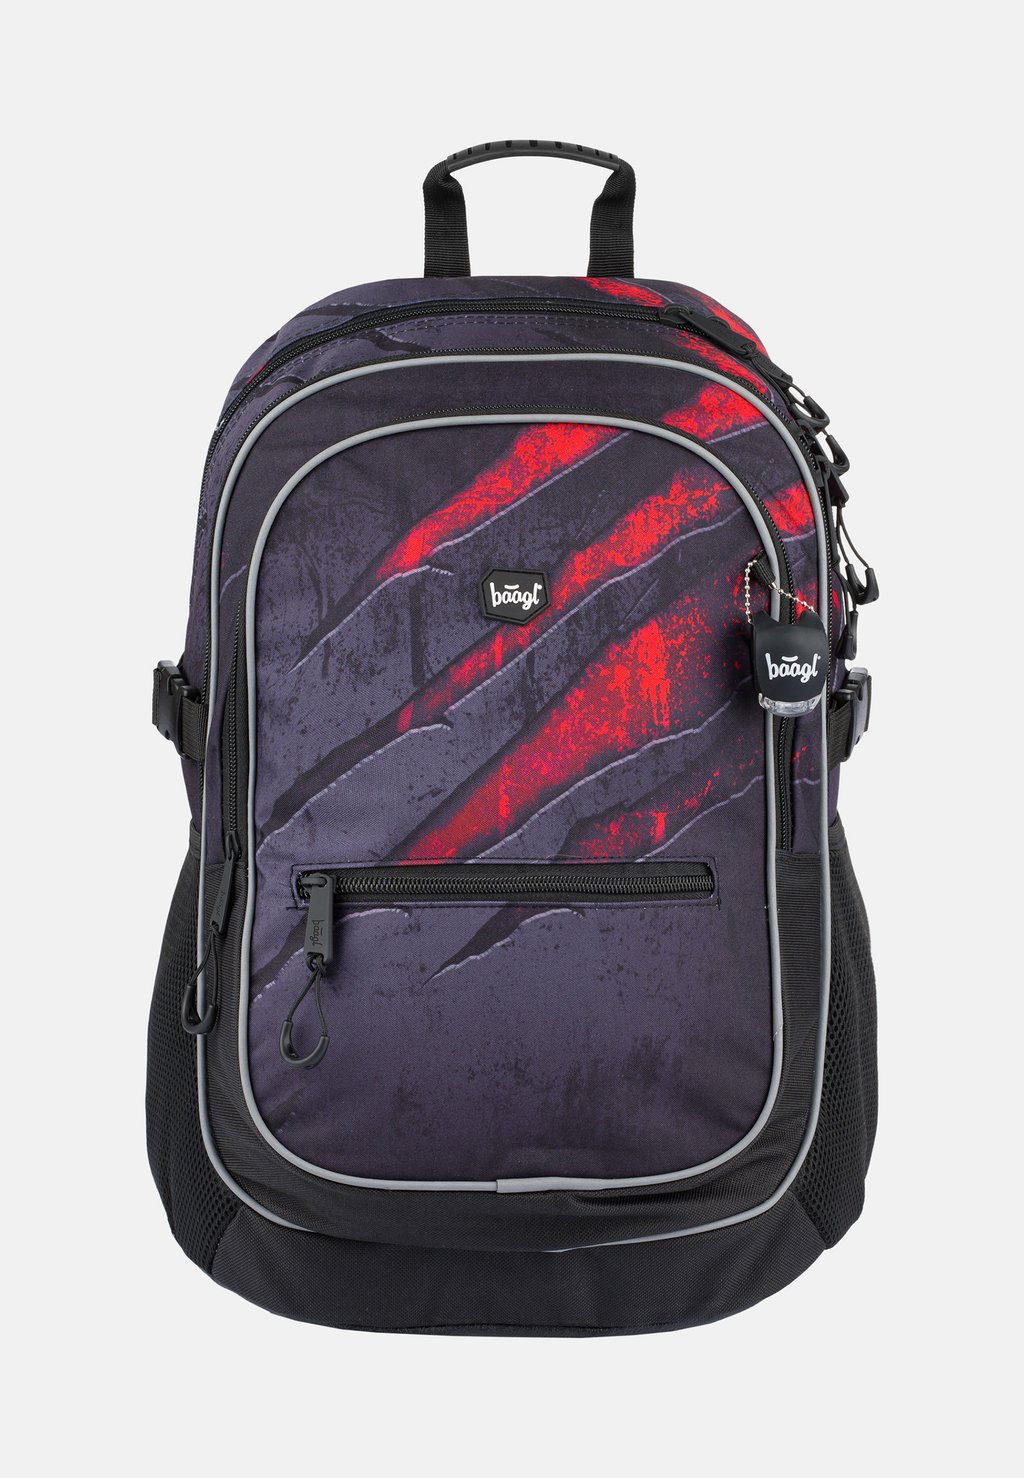 Школьная сумка Baagl, цвет grau